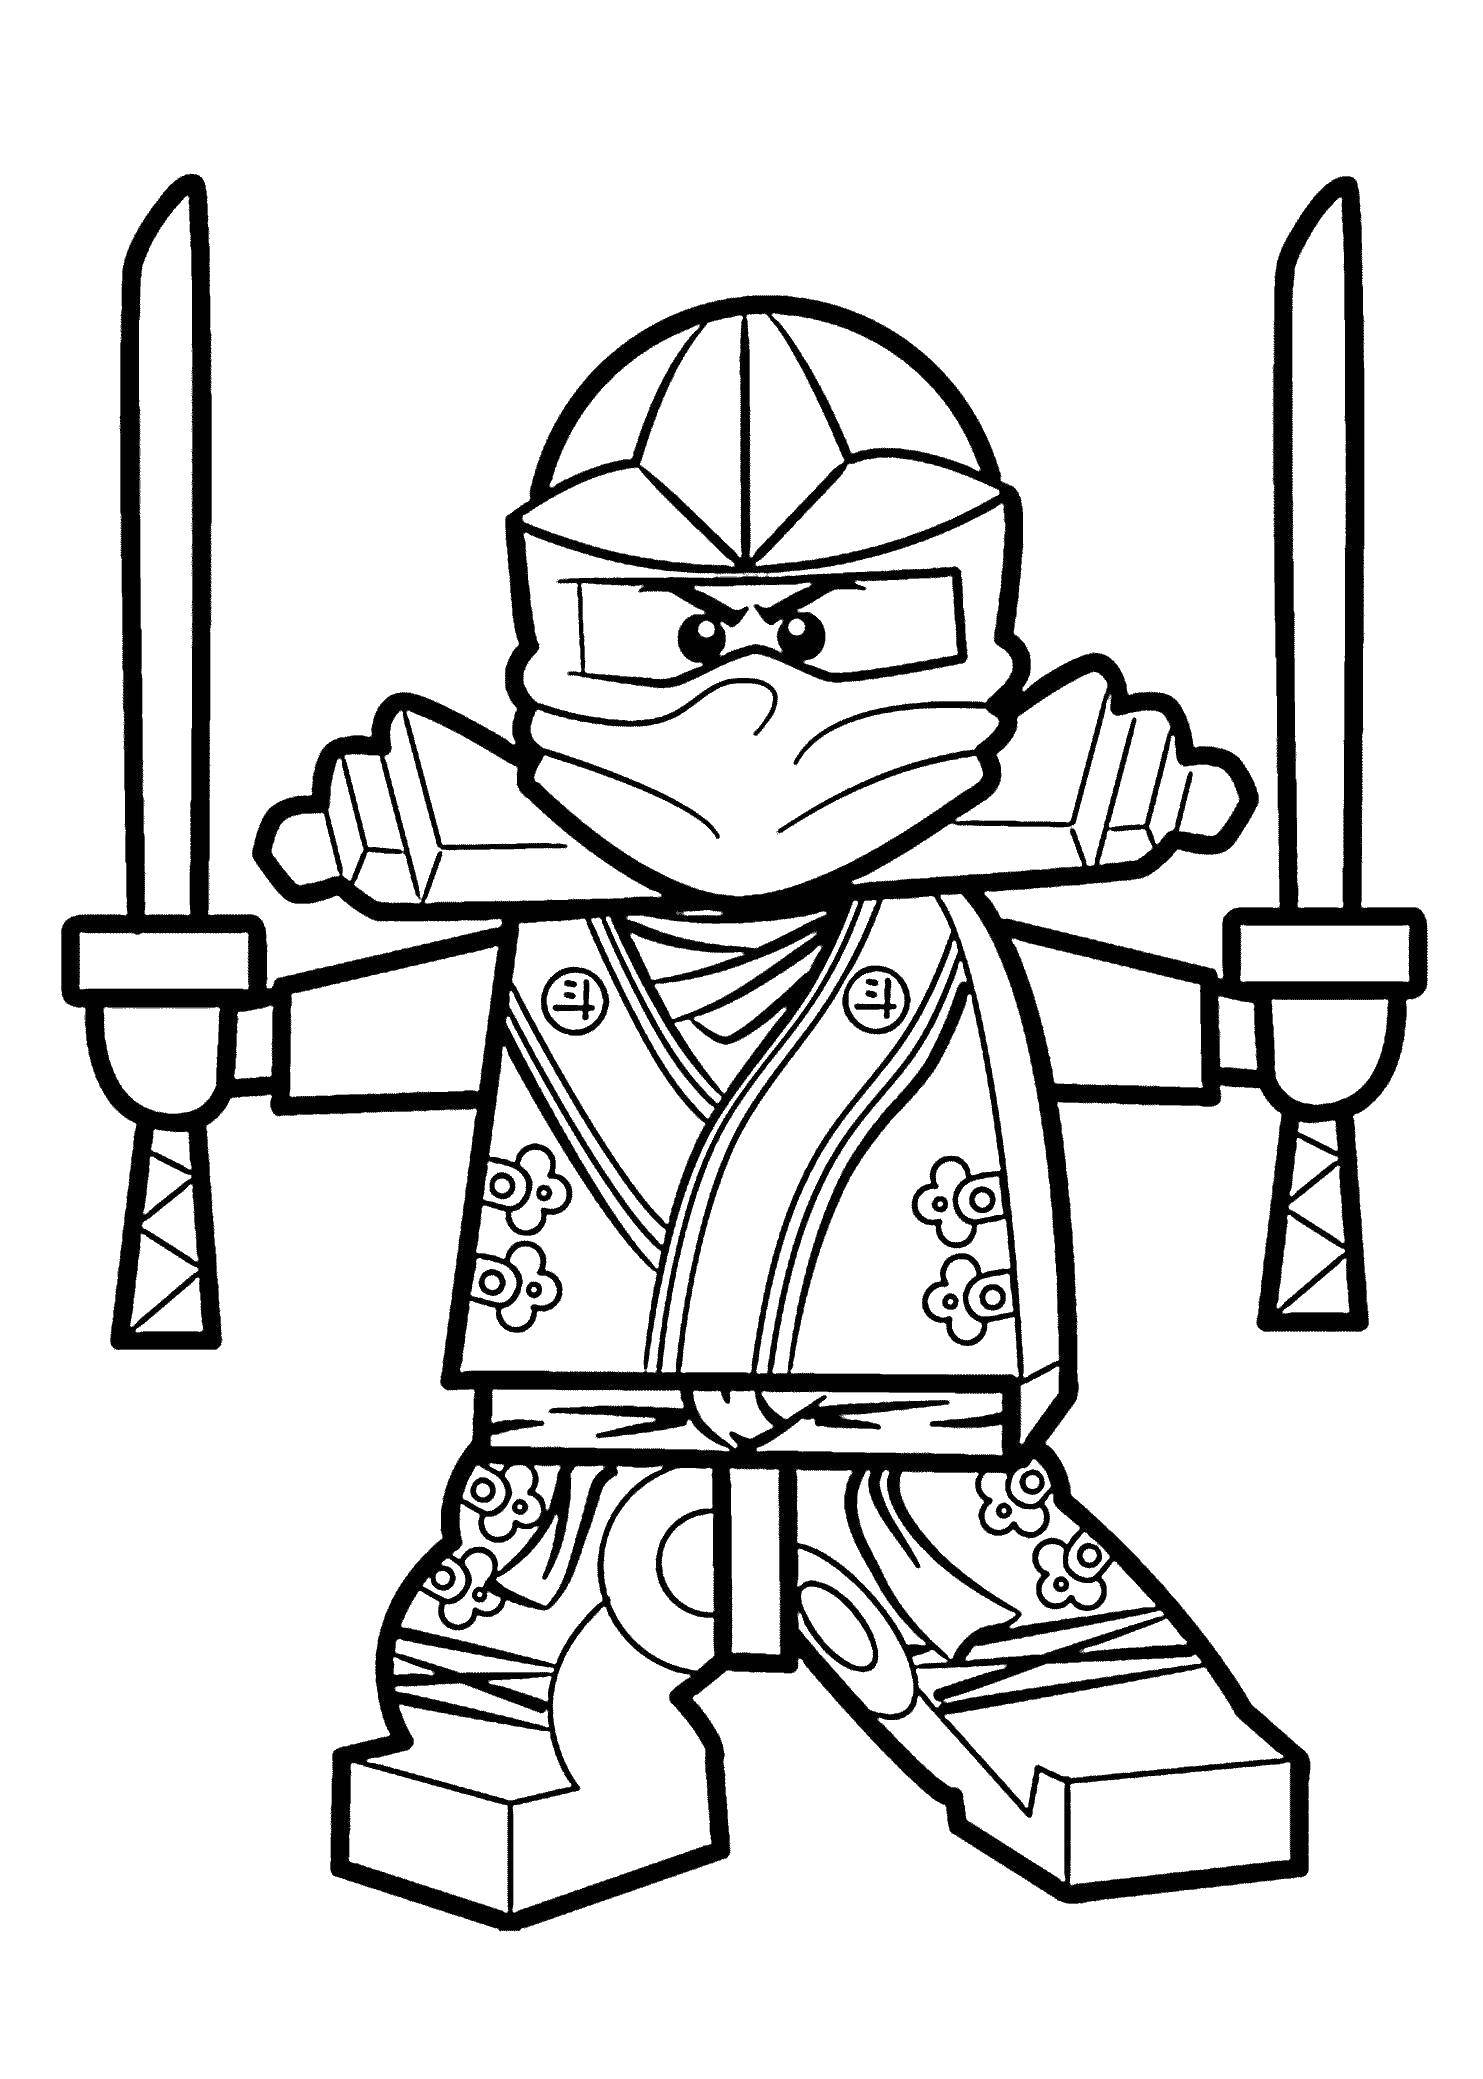 Опис: розмальовки  Ніндзя з конструктора лего з мечами. Категорія: ніндзя. Теги:  Ніндзя, конструктор Лего.